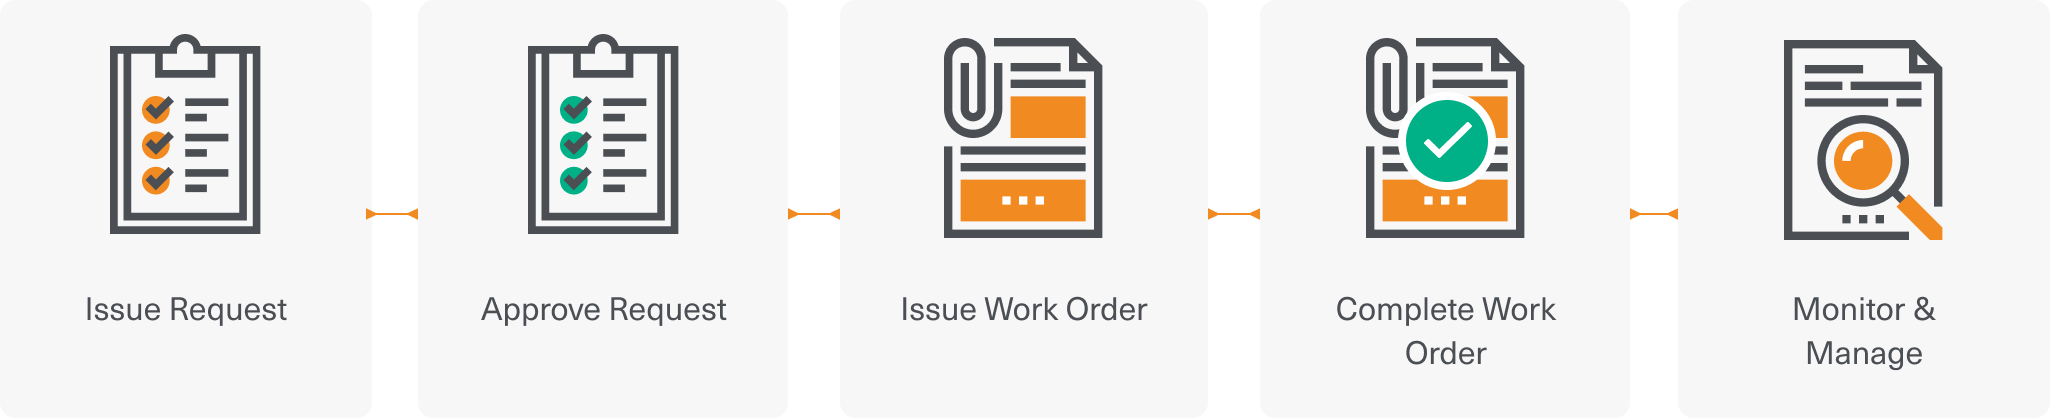 Built-in work order management system.